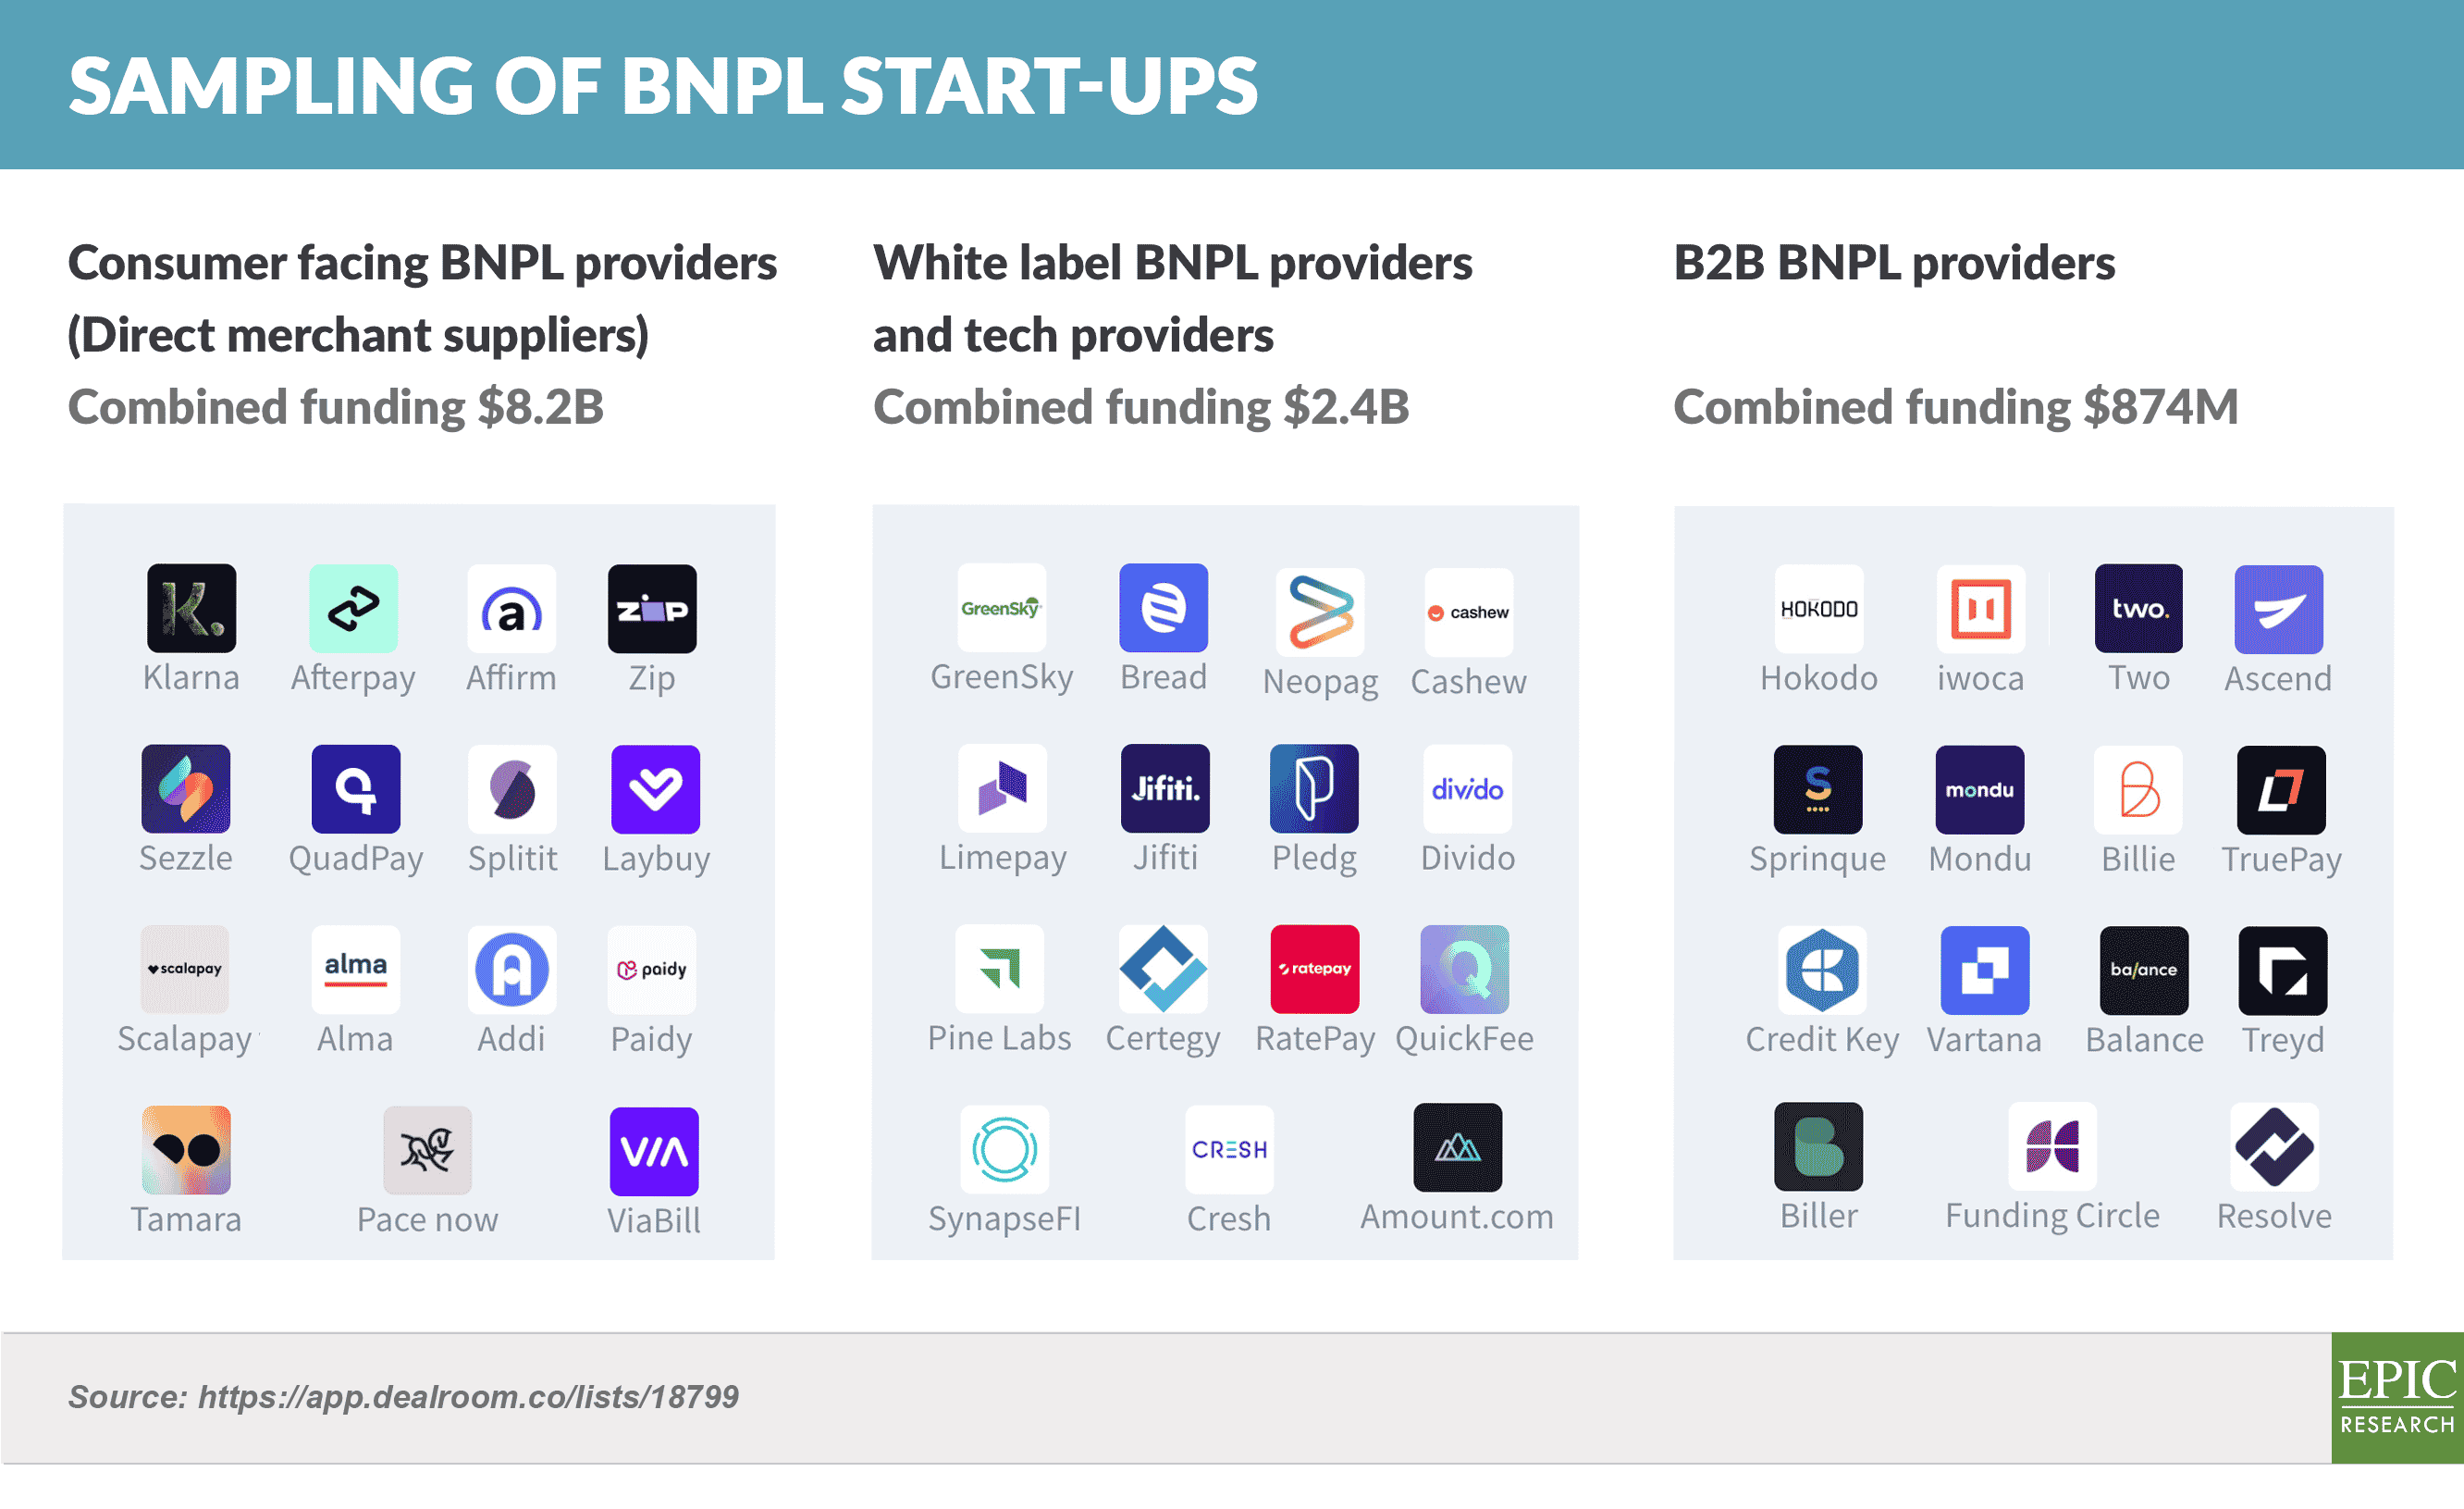 Sampling of BNPL Start-ups